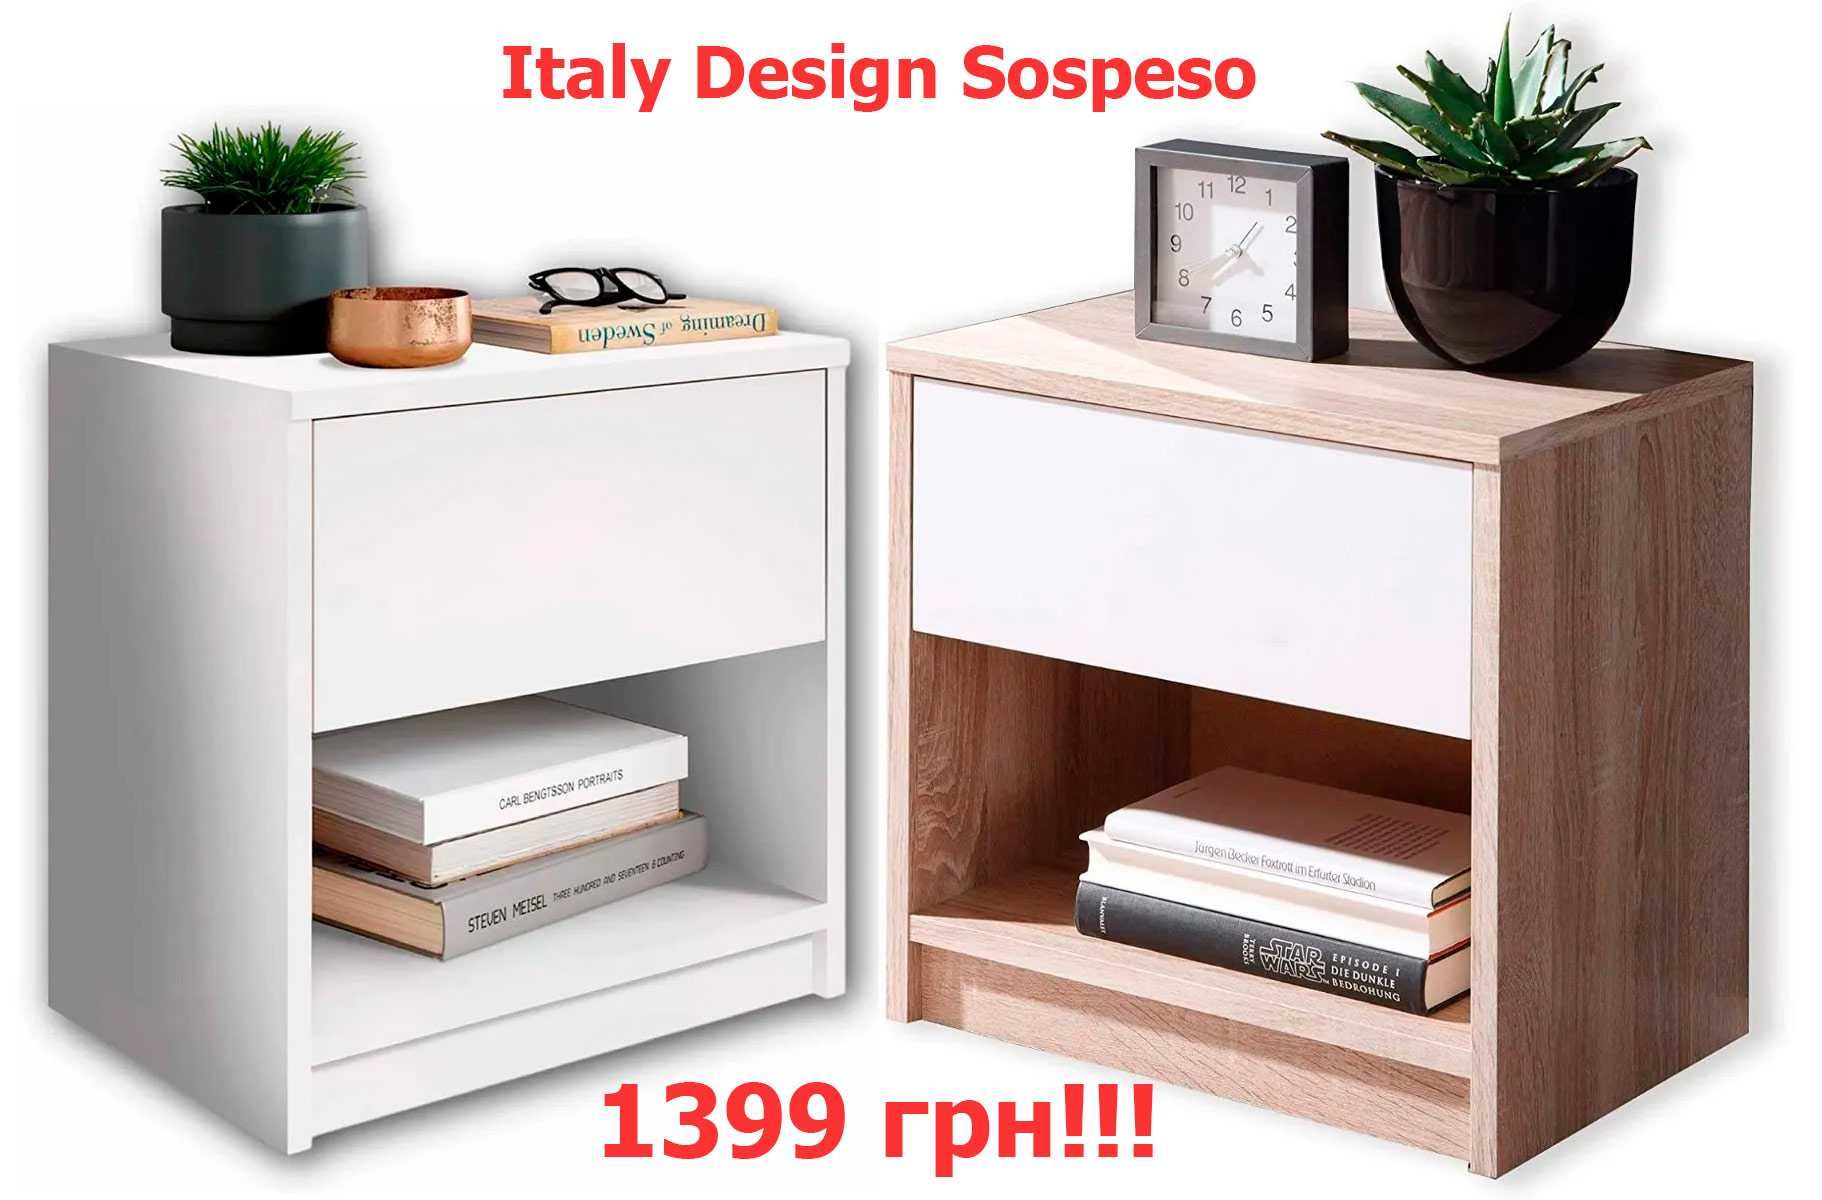 Стильная прикроватная тумба Design Sospeso Италия-дизайн. Разные цвета